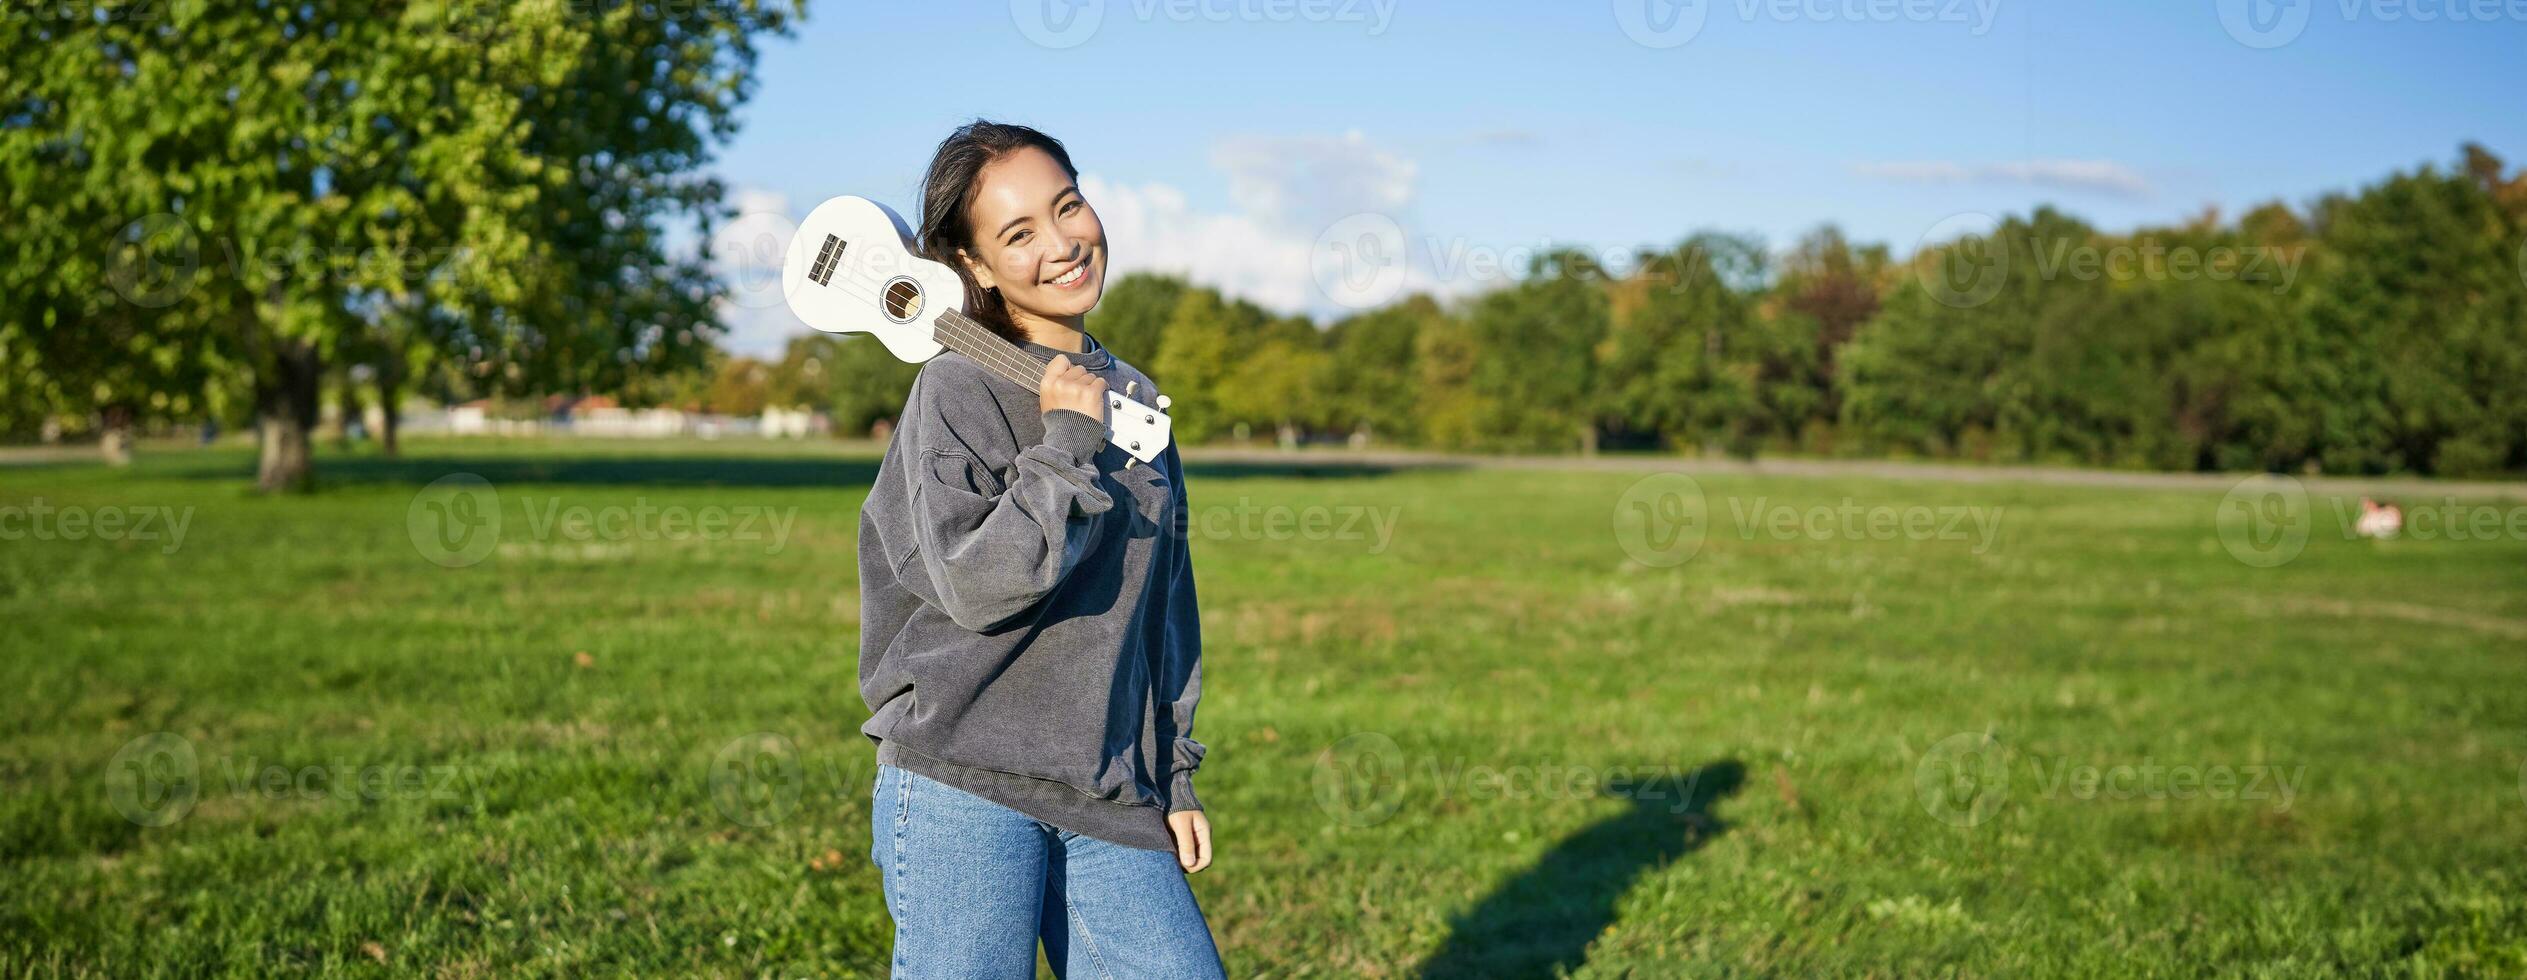 bellissimo coreano ragazza in posa con ukulele, giovane musicista giocando all'aperto nel verde parco su soleggiato giorno foto